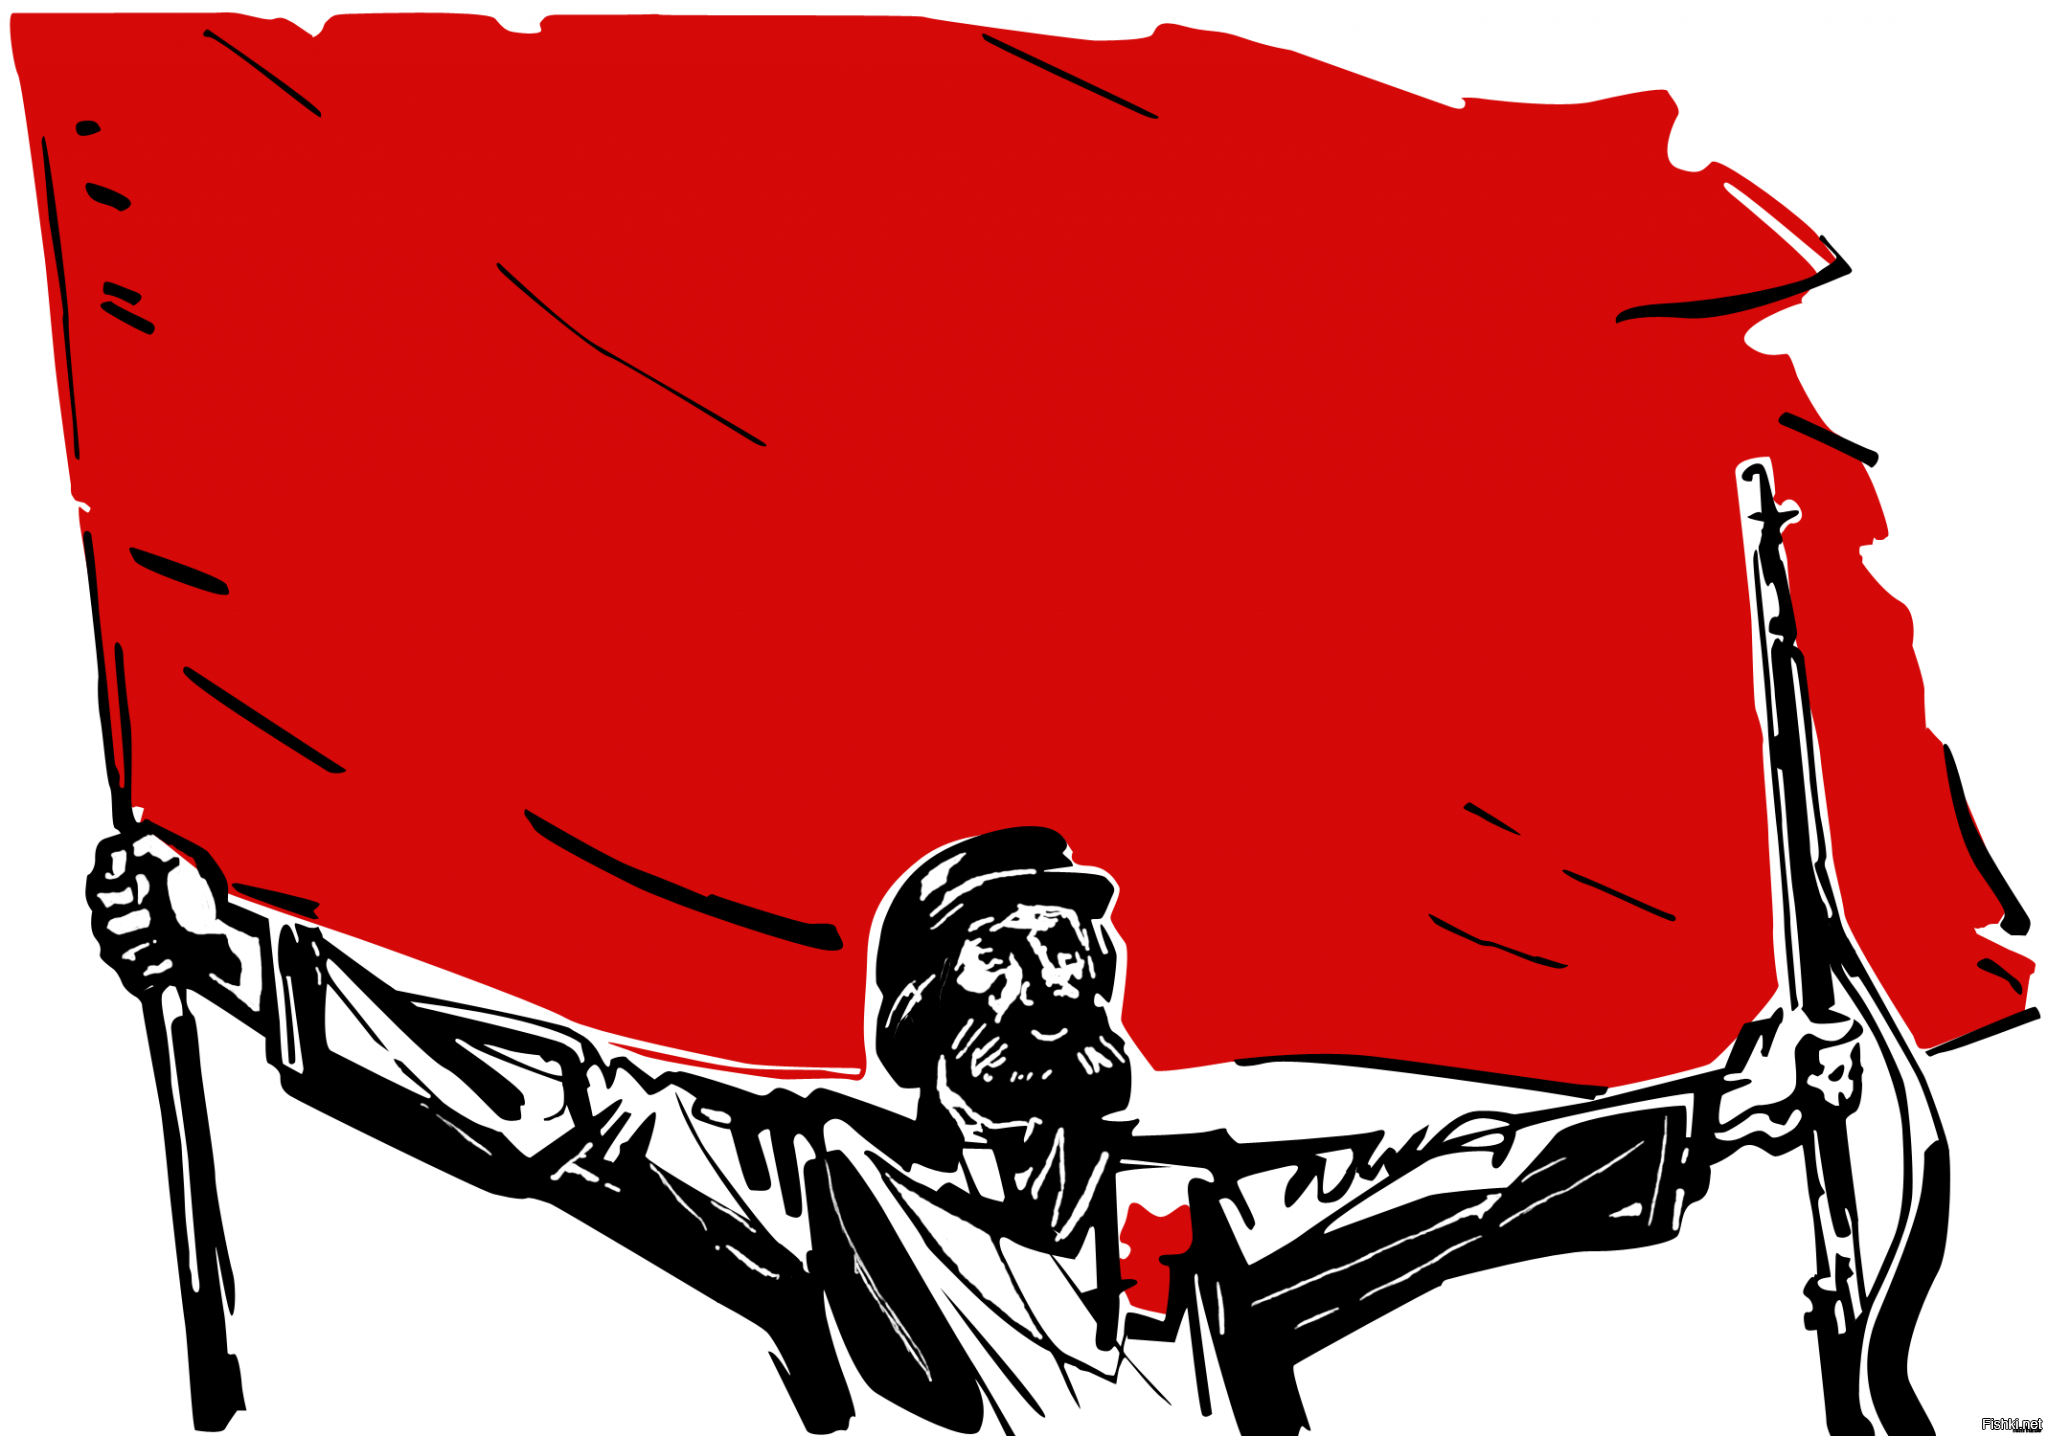 Красный флаг революции 1917